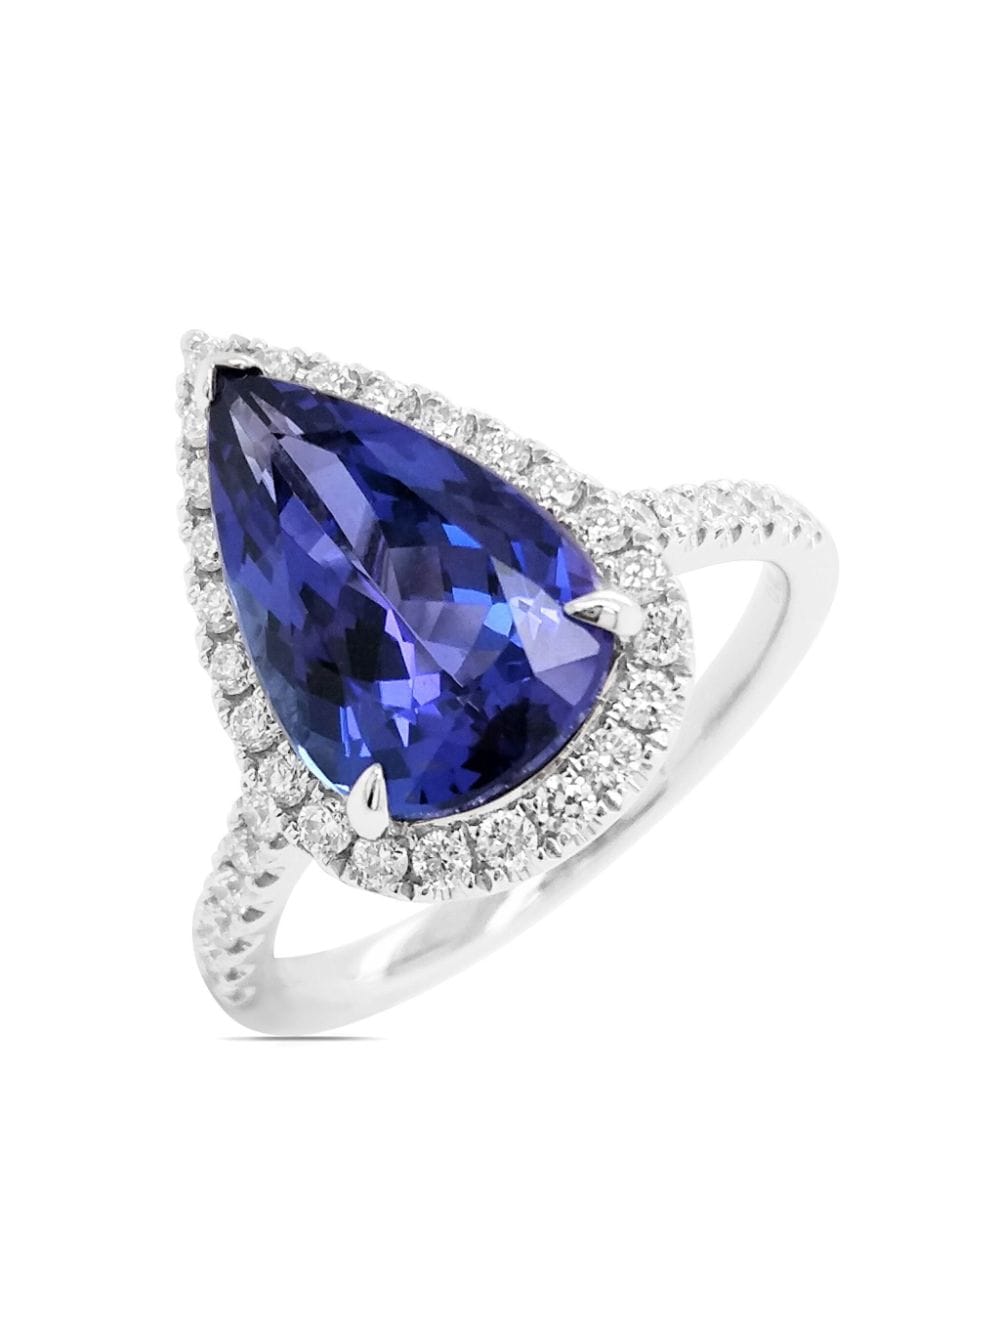 HYT Jewelry platinum tanzanite and diamond ring - Blau von HYT Jewelry